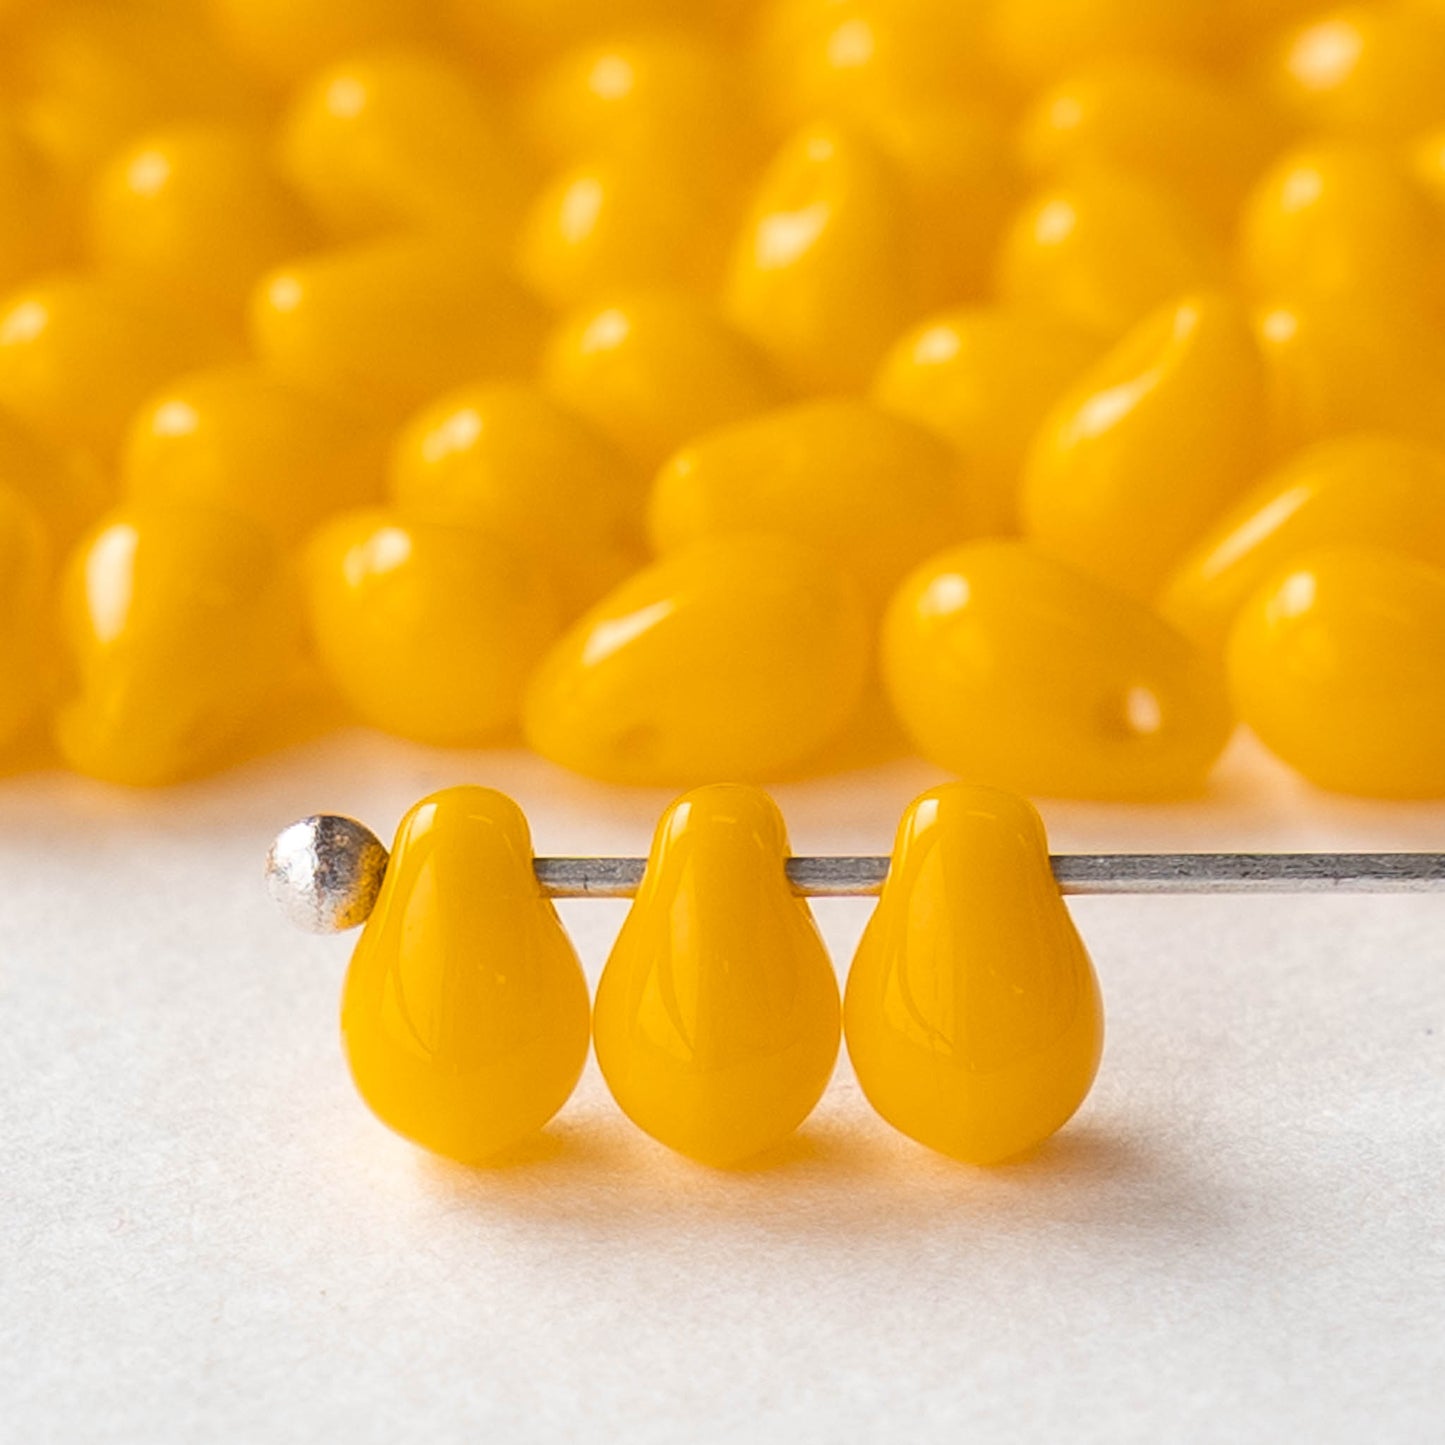 4x6mm Glass Teardrop Beads - Opaque Sunflower Yellow - 100 Beads